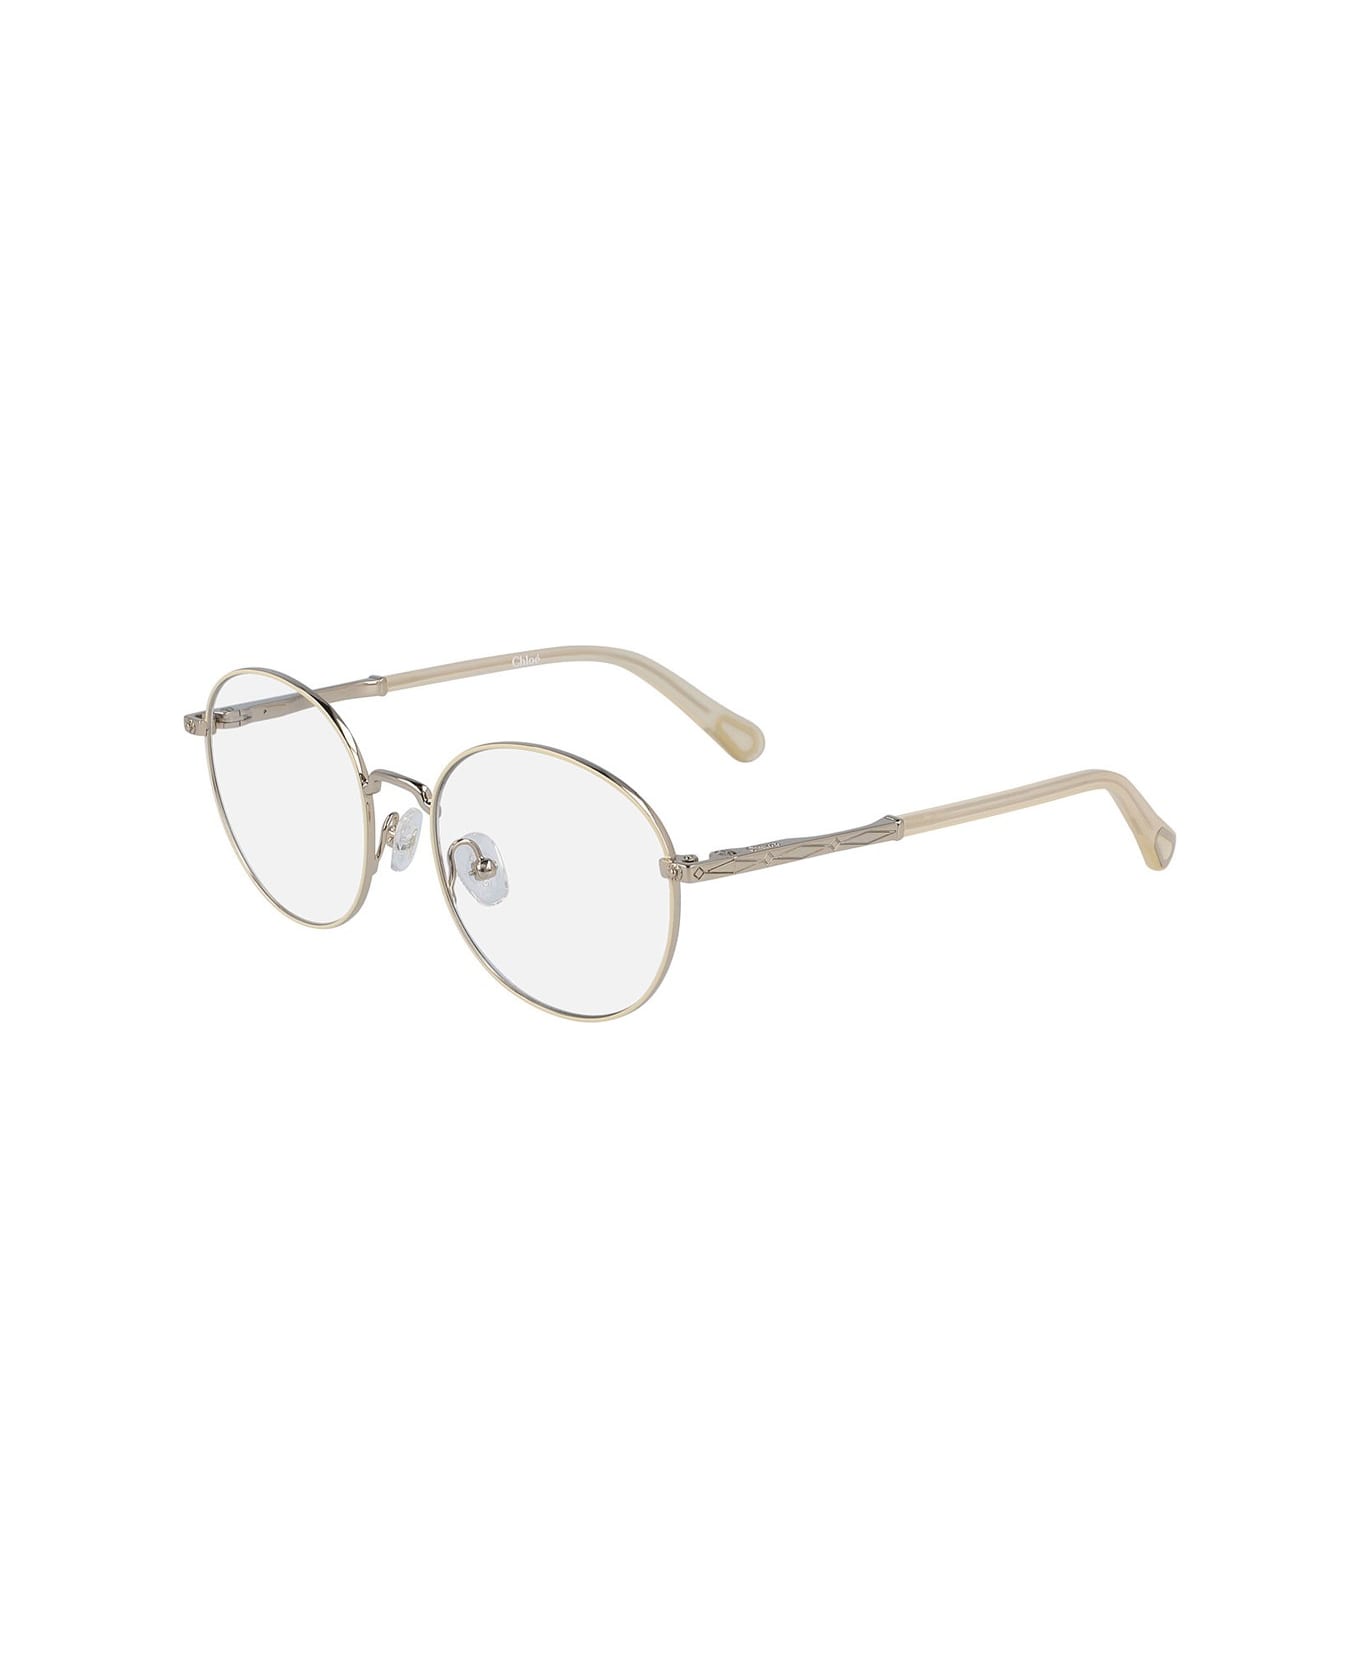 Chloé Ce3106 Junior Glasses アイウェア